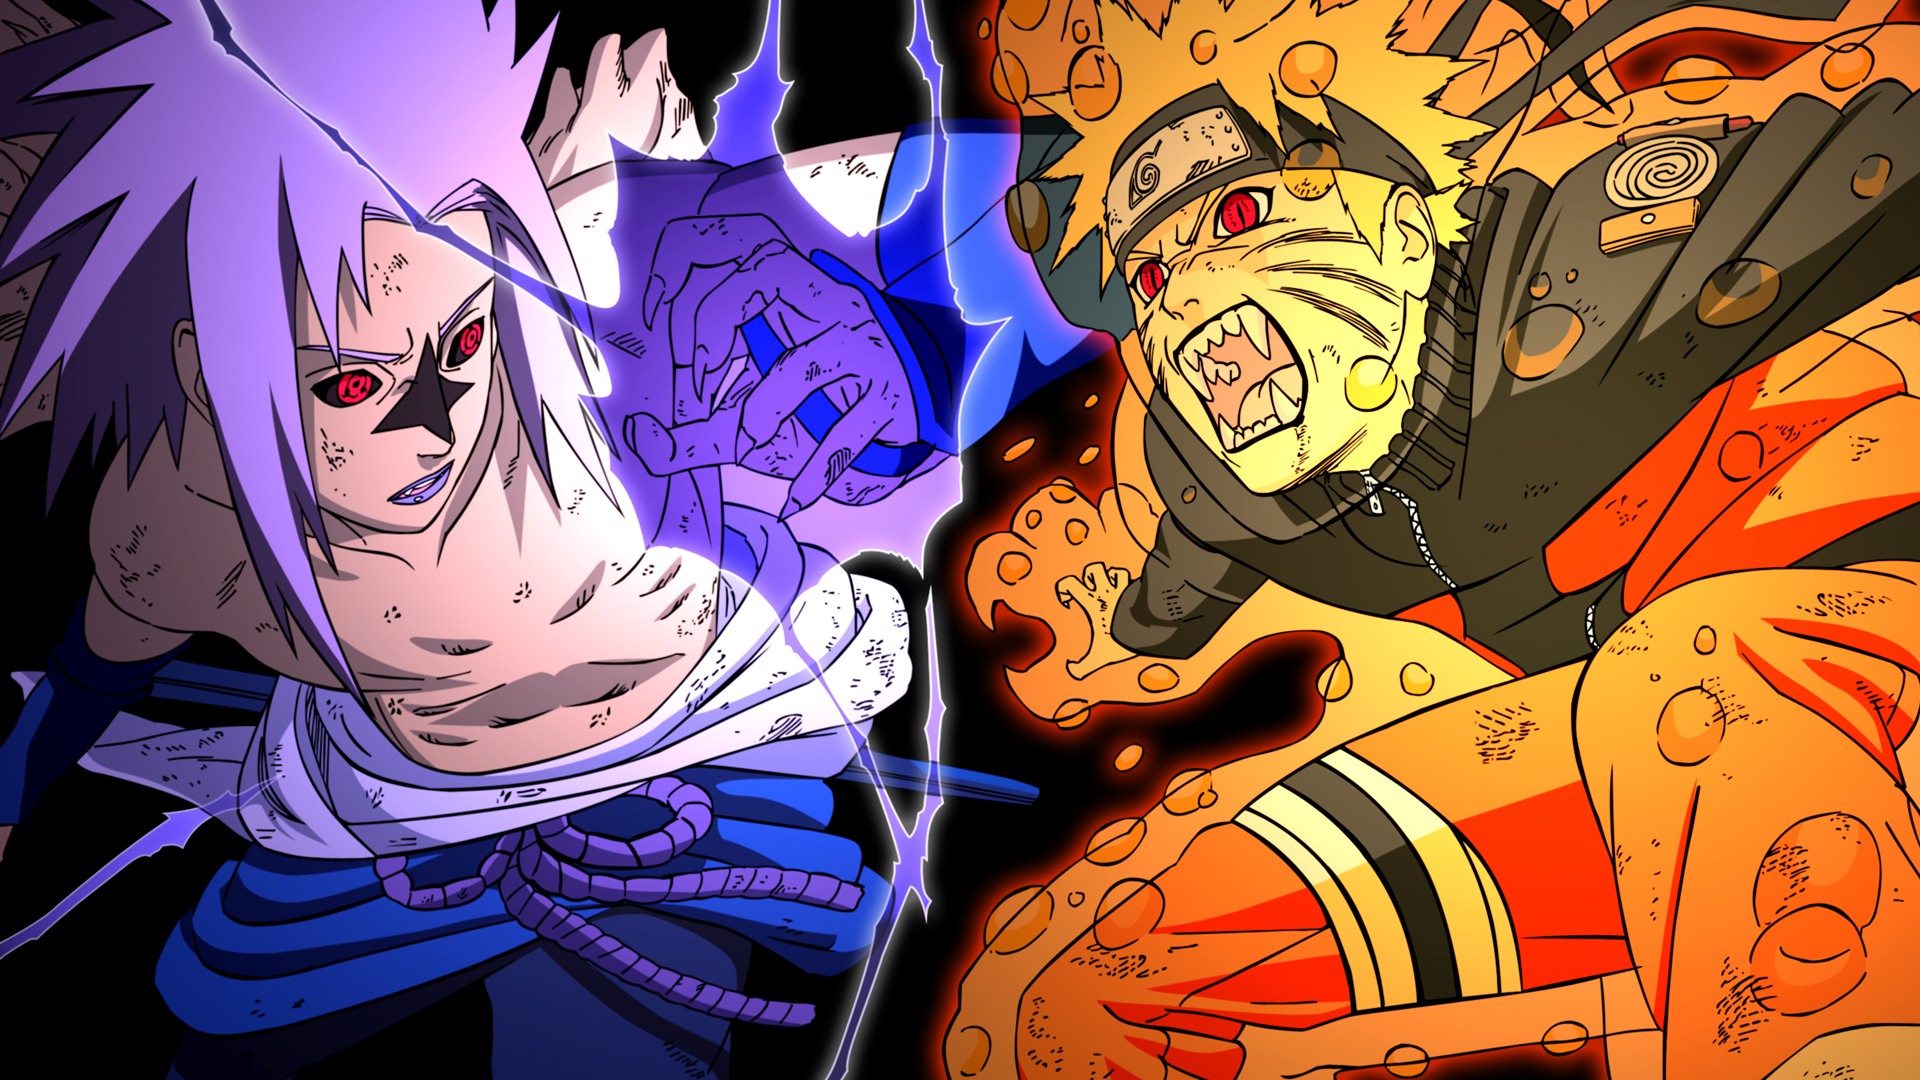 Naruto: Protagonista já morreu no mangá original, entenda como